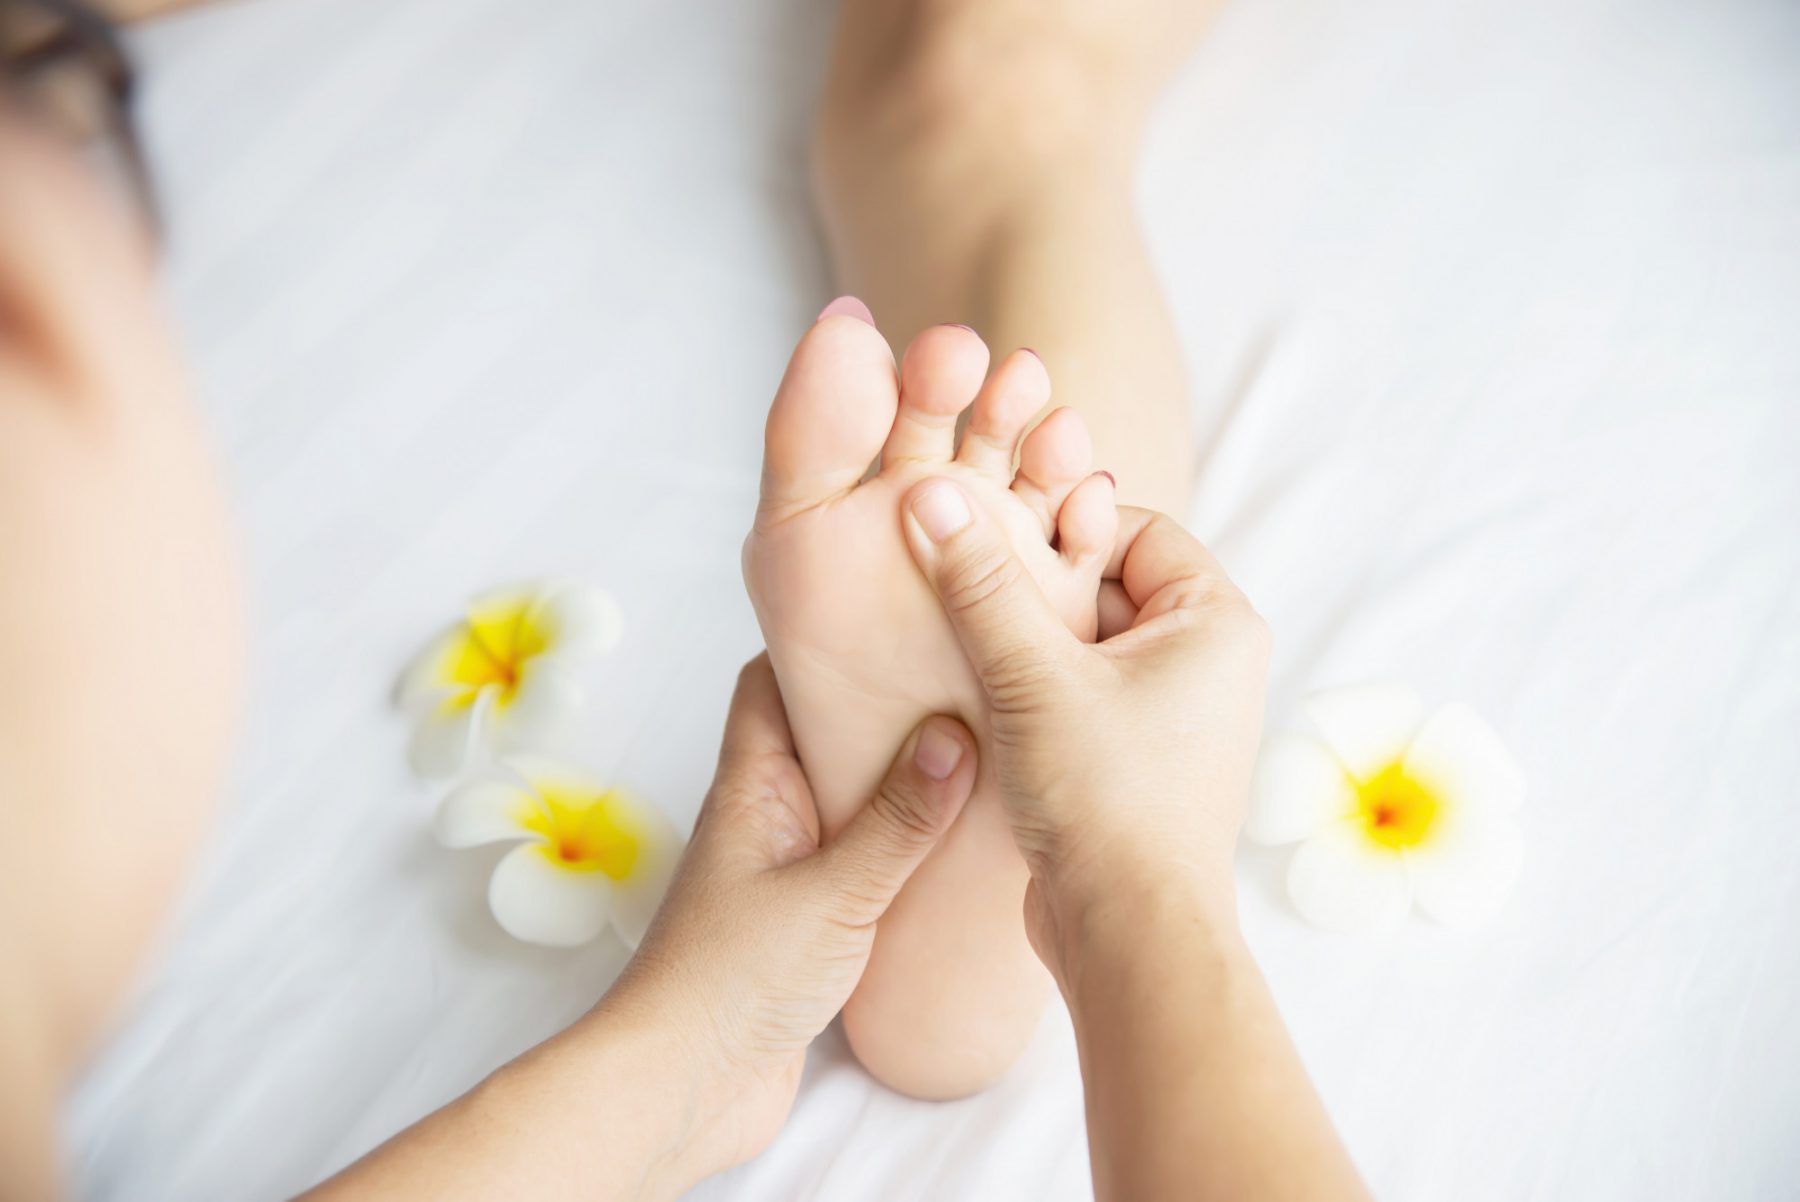 Πρησμένα πόδια και αστραγάλοι: Θεραπείες που πρέπει να δοκιμάσετε